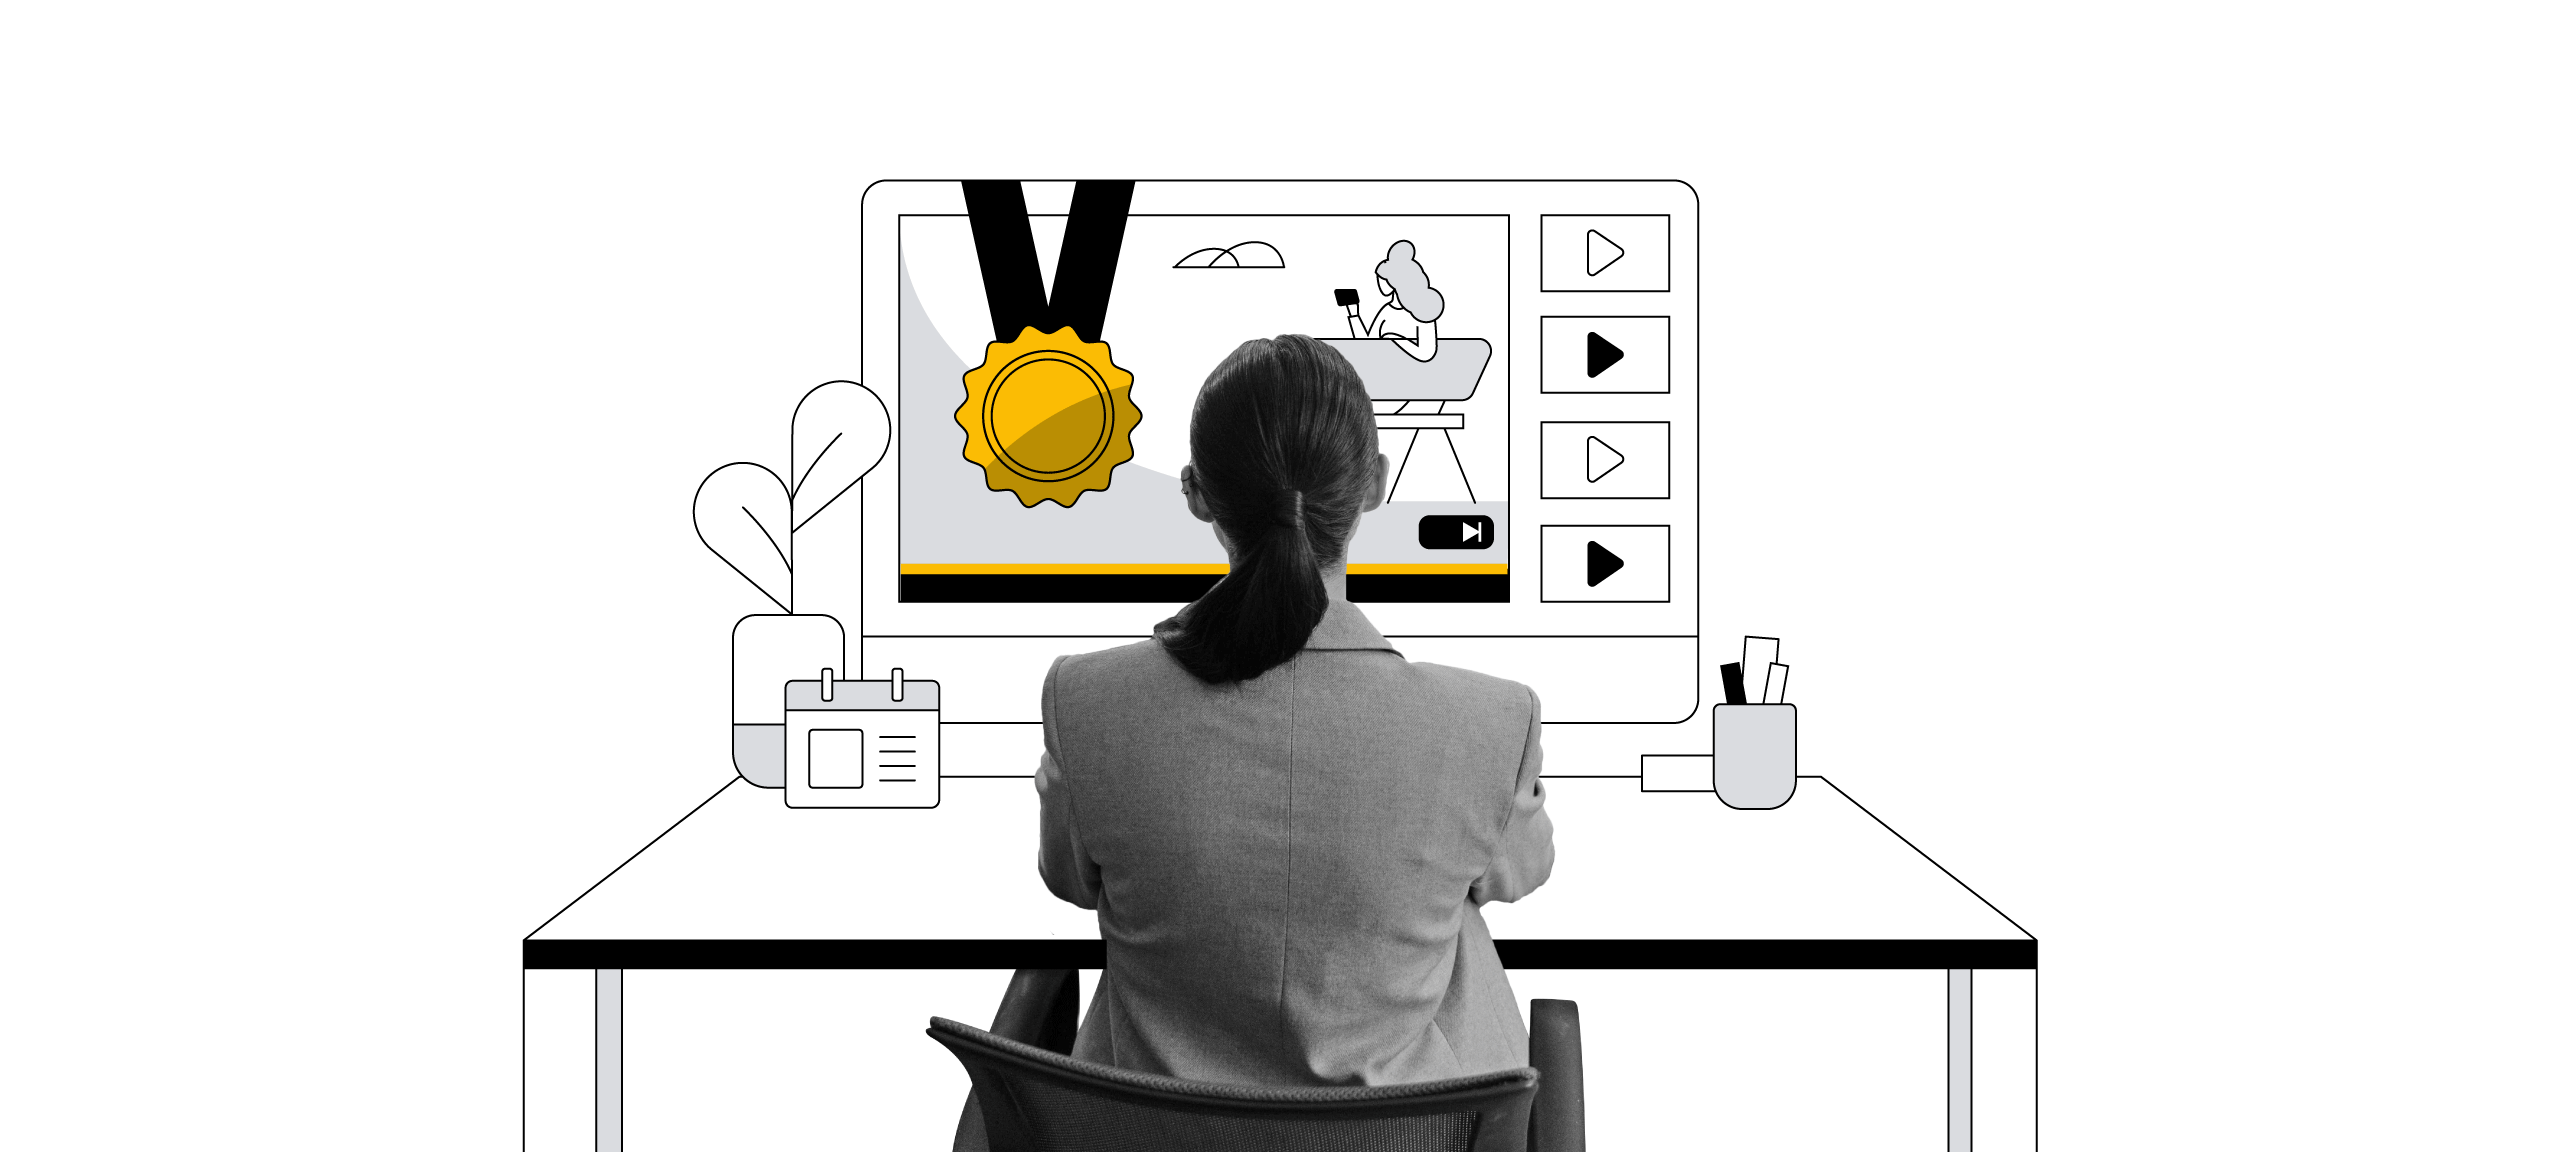 Persona con i capelli lunghi fino alle spalle raccolti in una coda di cavallo seduta davanti allo schermo di un computer mentre guarda video online. Nella parte superiore dello schermo è visualizzata una medaglia d'oro.